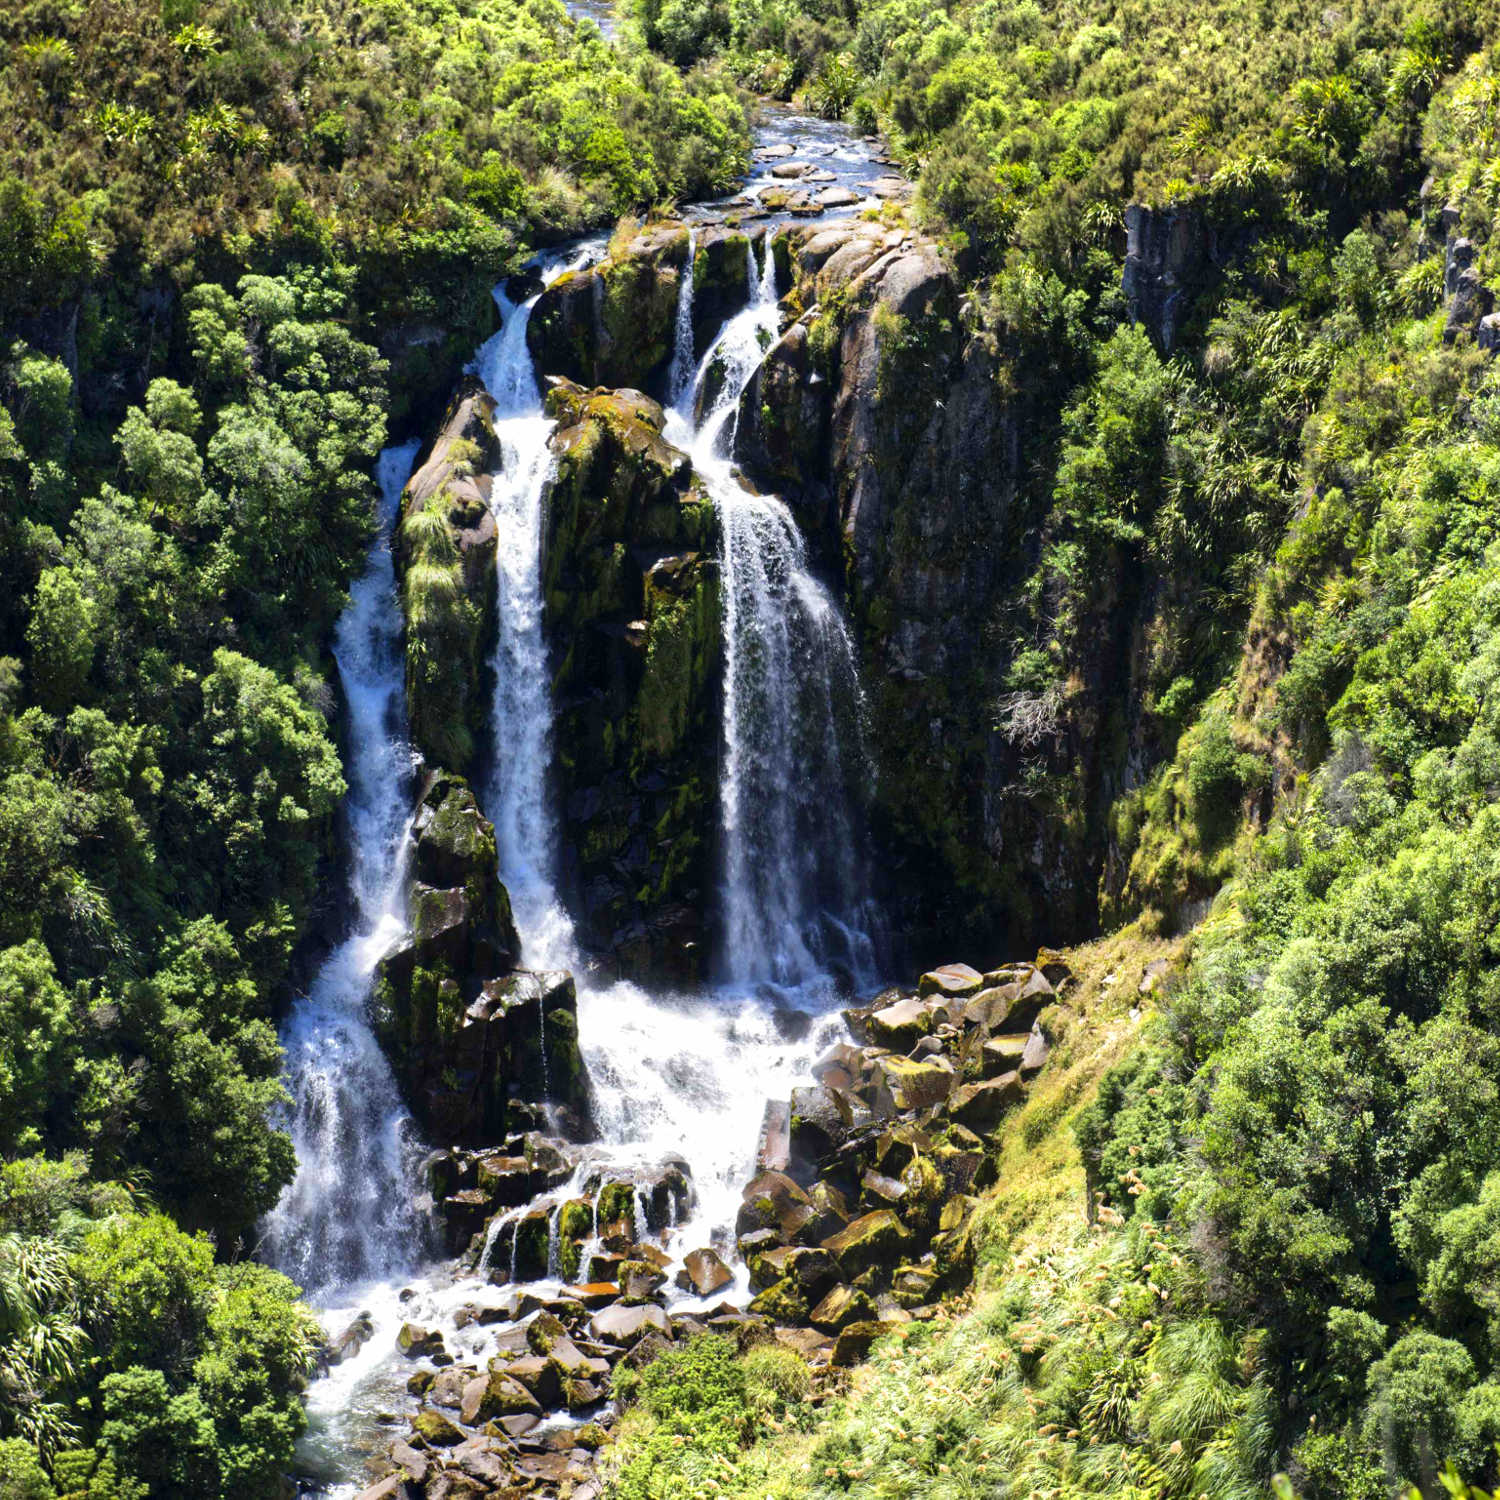 Waipunga Falls on the Waipunga River, west of Taupo, New Zealand